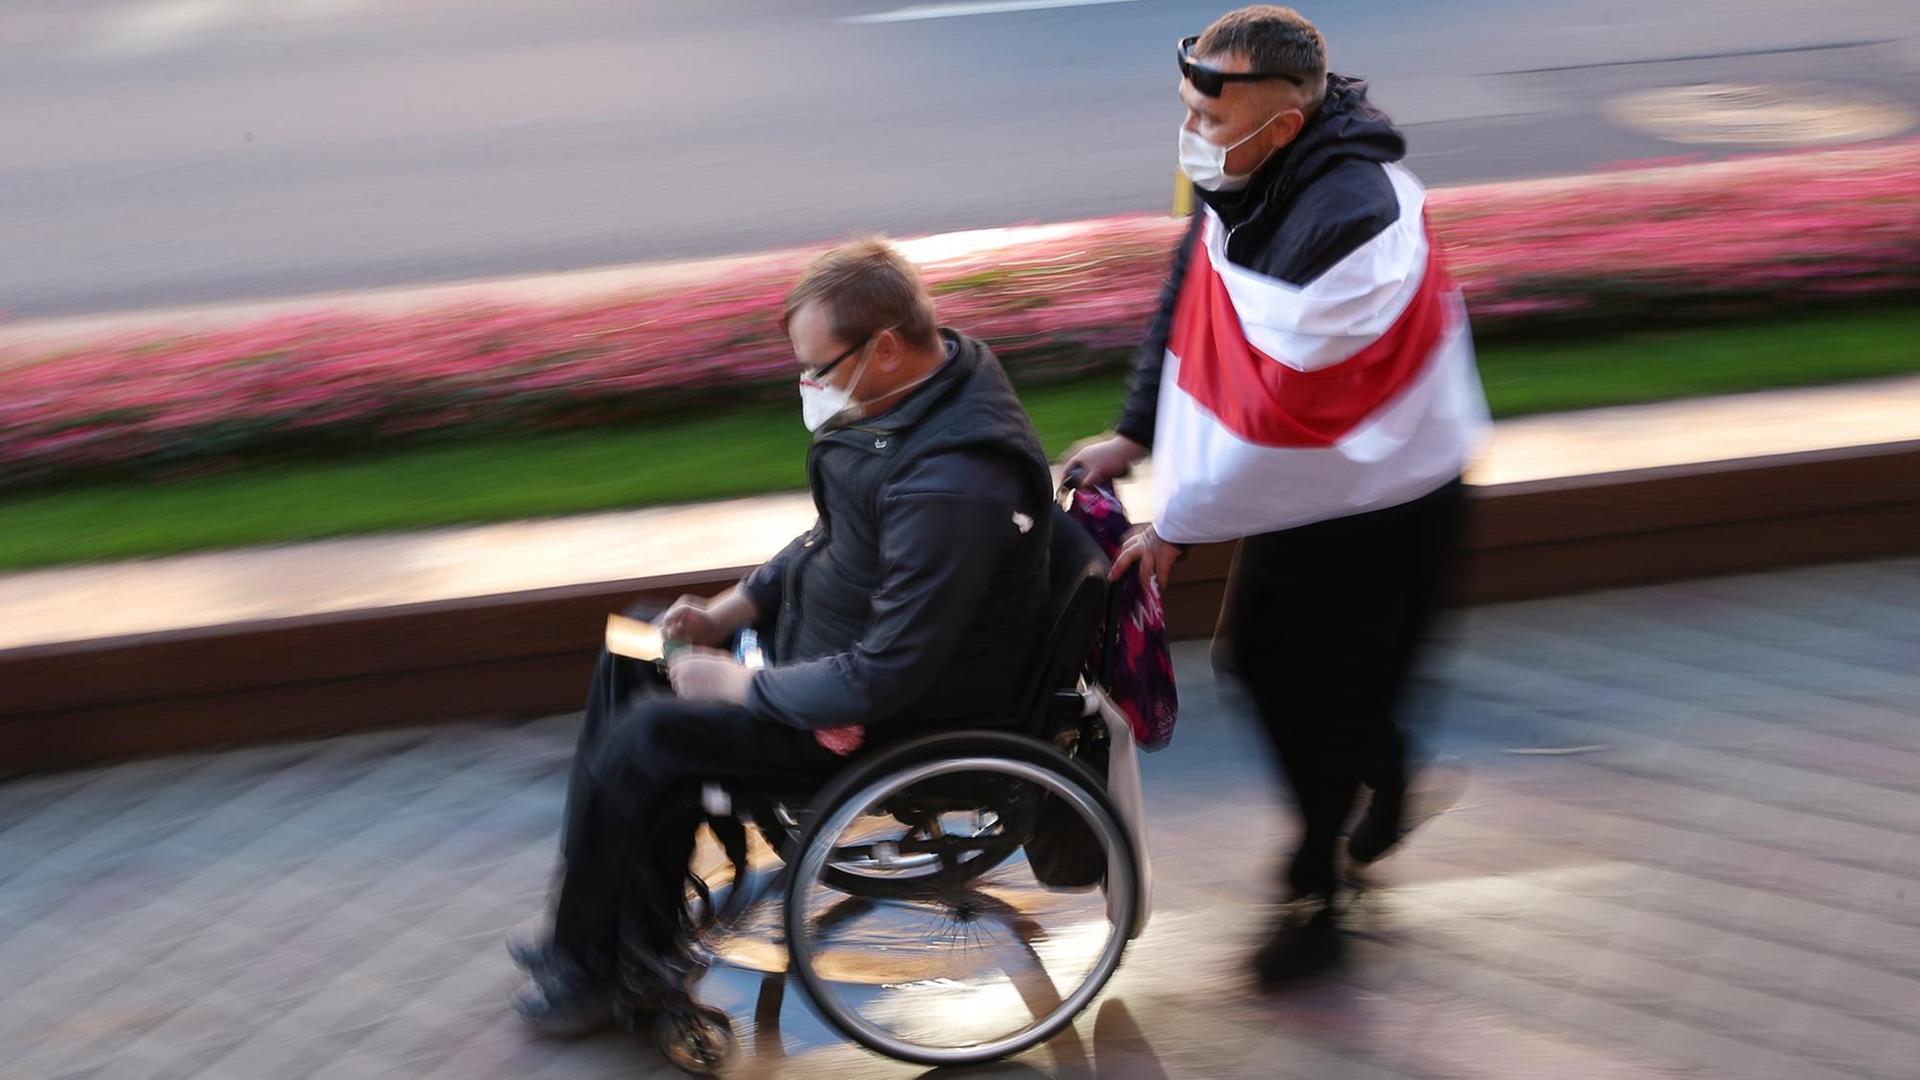 Ein Mann im Rollstuhl wird von einem anderen Mann geschoben, der sich eine weiß-rote Flagge um die Schultern geworfen hat.